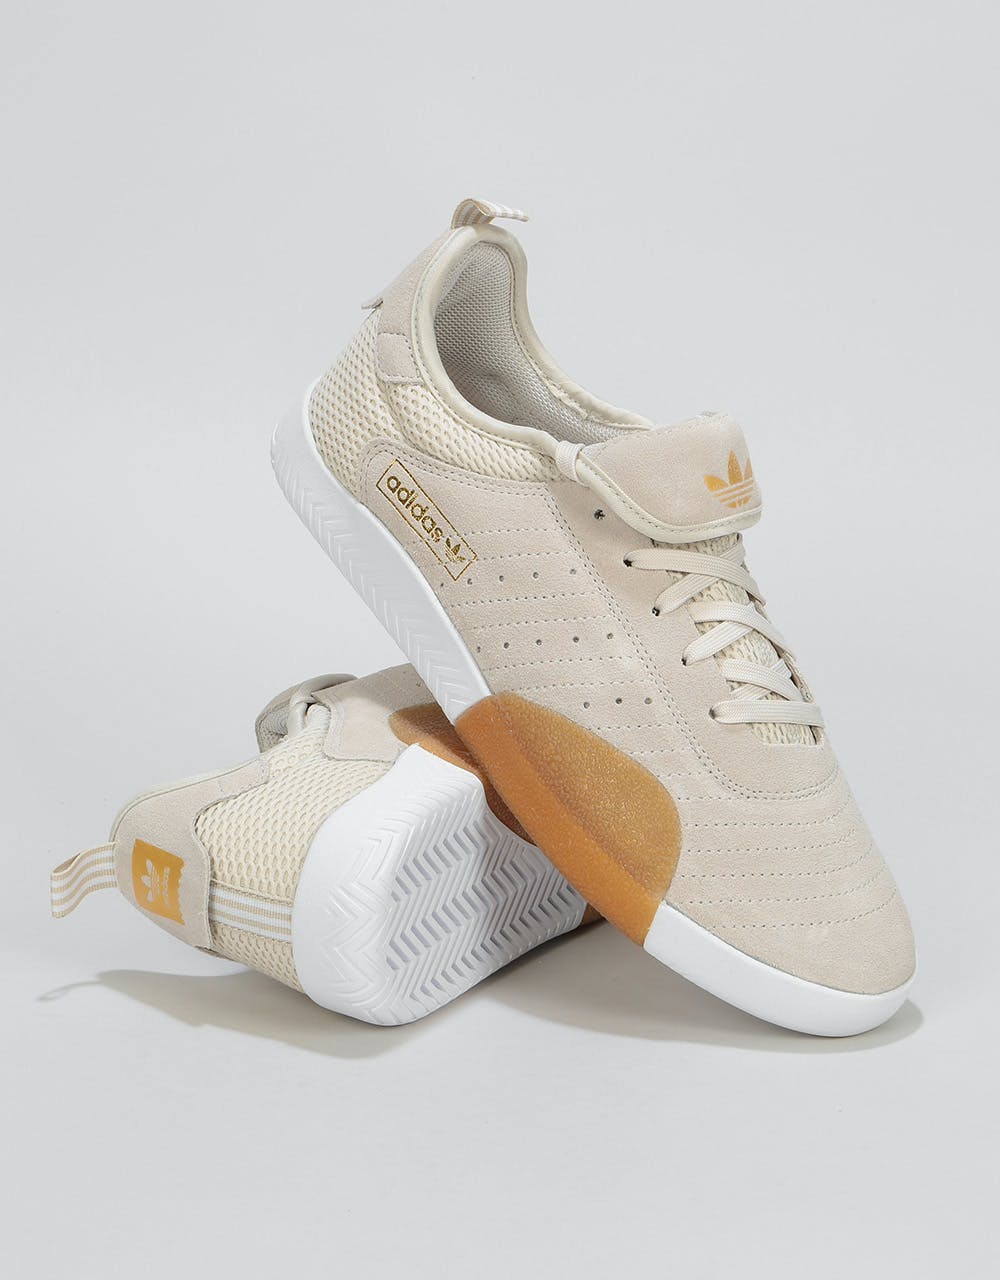 Adidas 3ST.003 Skate Shoes - Clear Brown/White/Gum